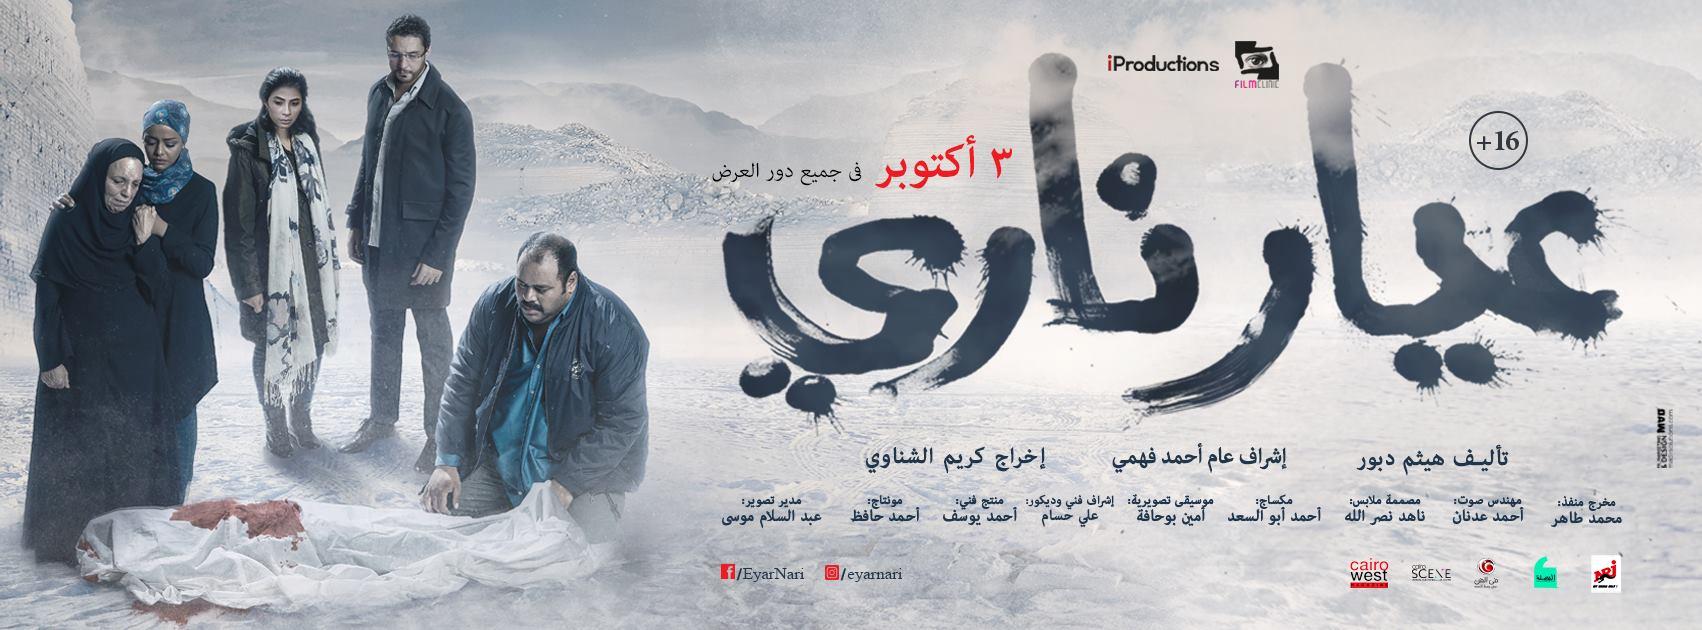 10 من افضل افلام الجريمة المصرية الحديثة 1